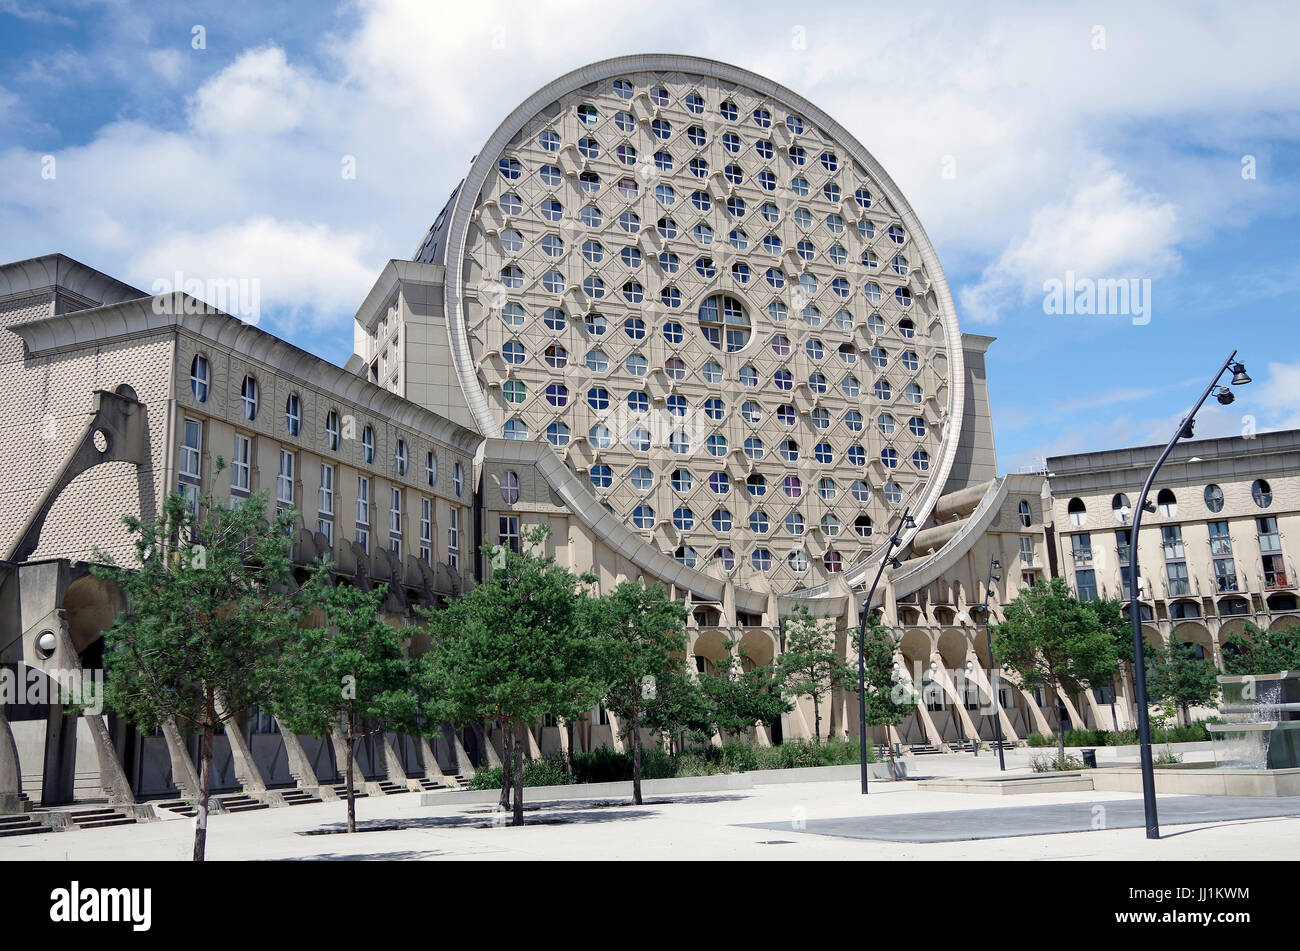 Les arènes de Picasso, du développement immobilier, aka Les camemberts, aile ouest, vue de l'intérieur Cour octogonale Banque D'Images